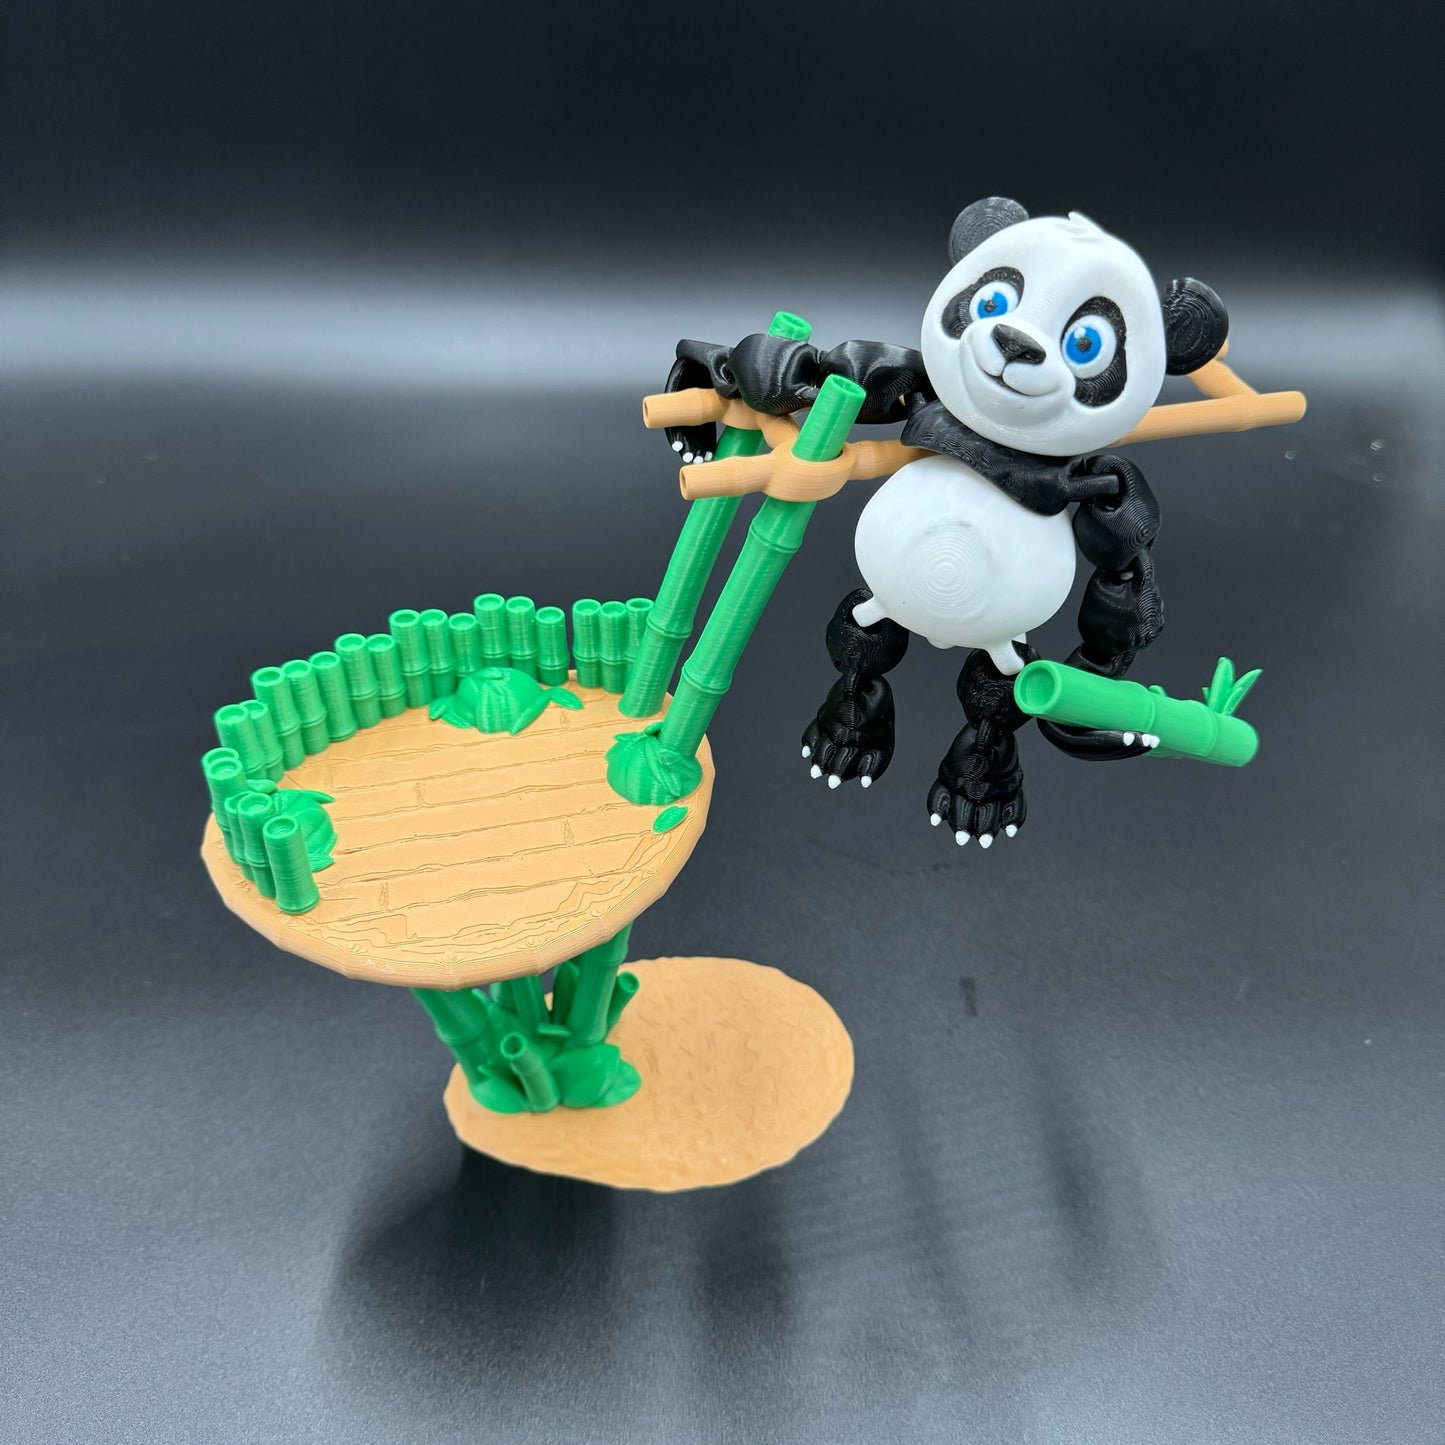 3D Printed Panda